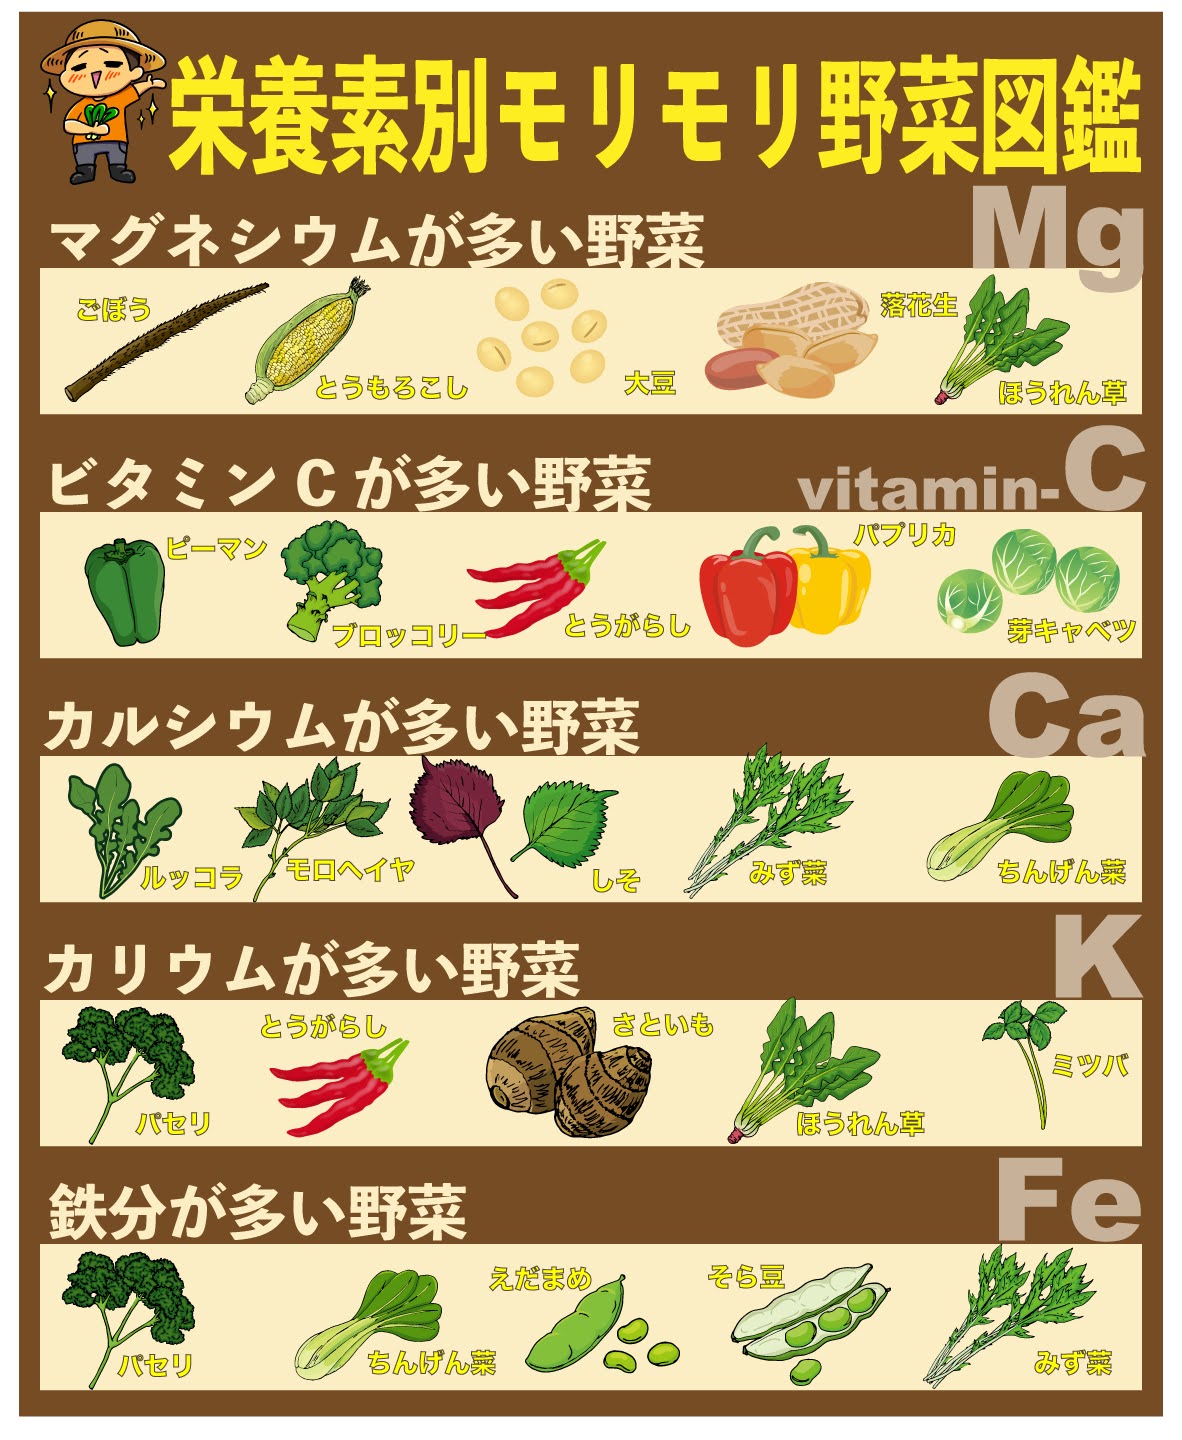 しん 野菜を育むプロ Sinyasai Twitter